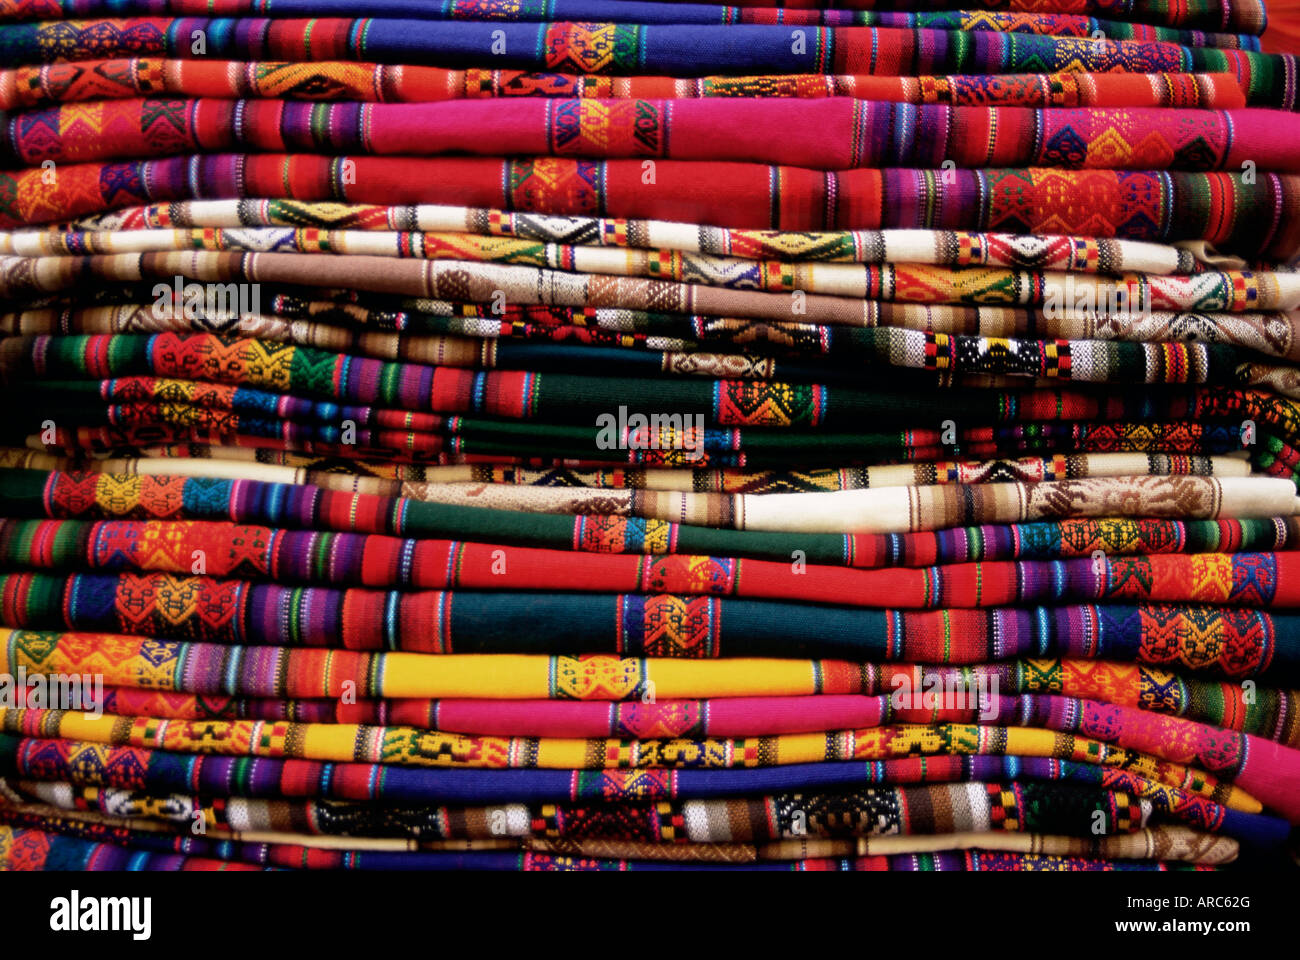 Détail d'un tas de ponchos colorés, Cuzco (Cusco), Pérou, Amérique du Sud Banque D'Images